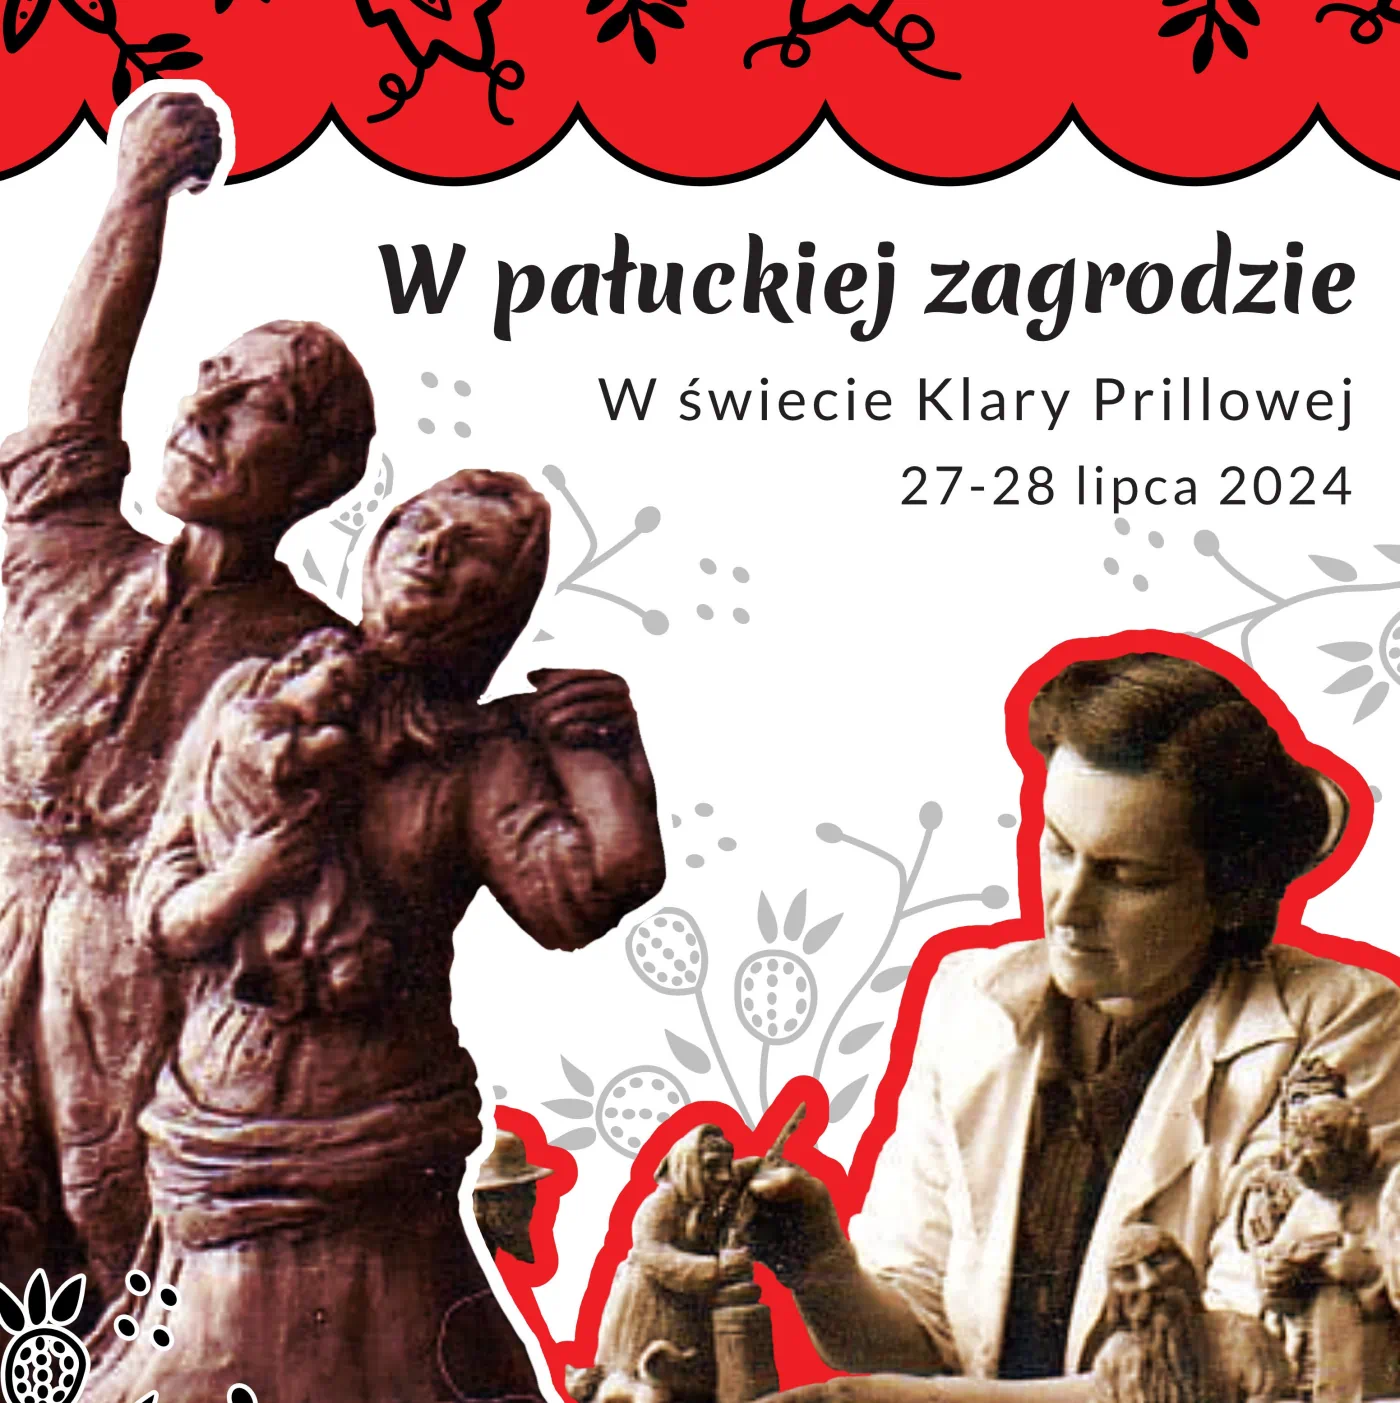 Wizerunek kobiety i rzeźby ludowe na plakacie wydarzenia pt. "W pałuckiej zagrodzie".